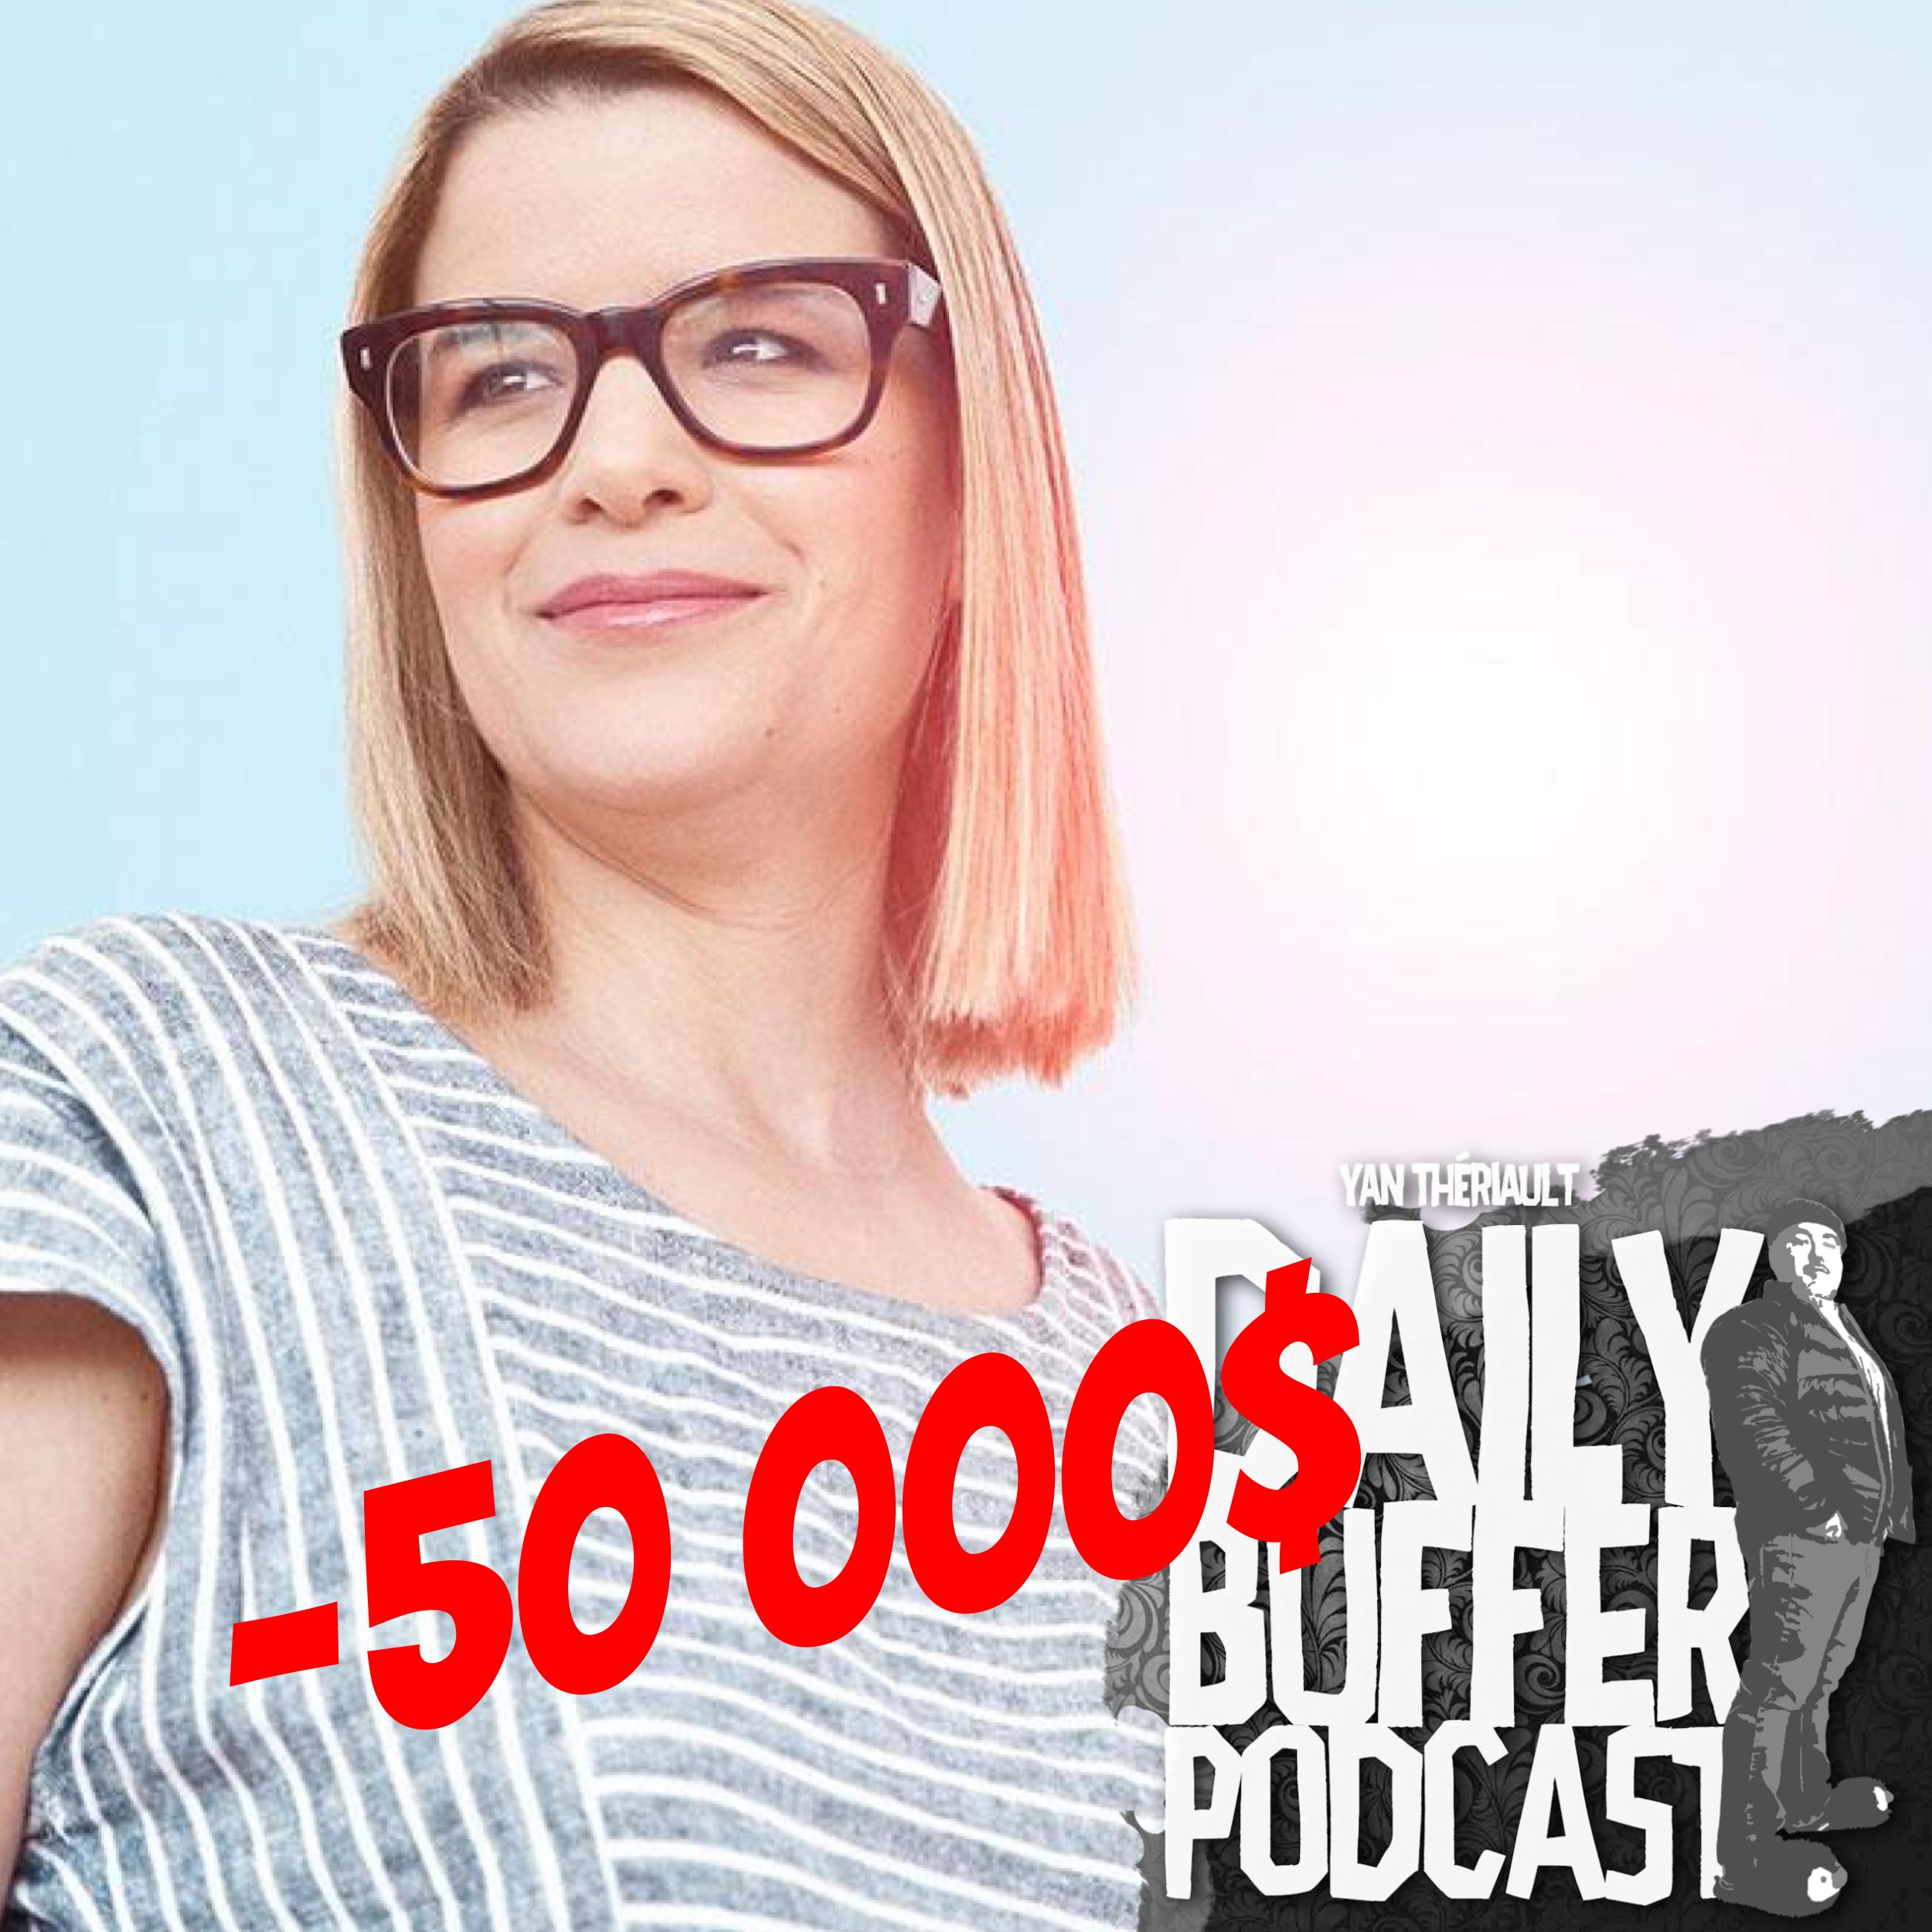 Influenceuse dans le trou de 50 000$ Le Daily Buffer Podcast - 2020 01 21 l